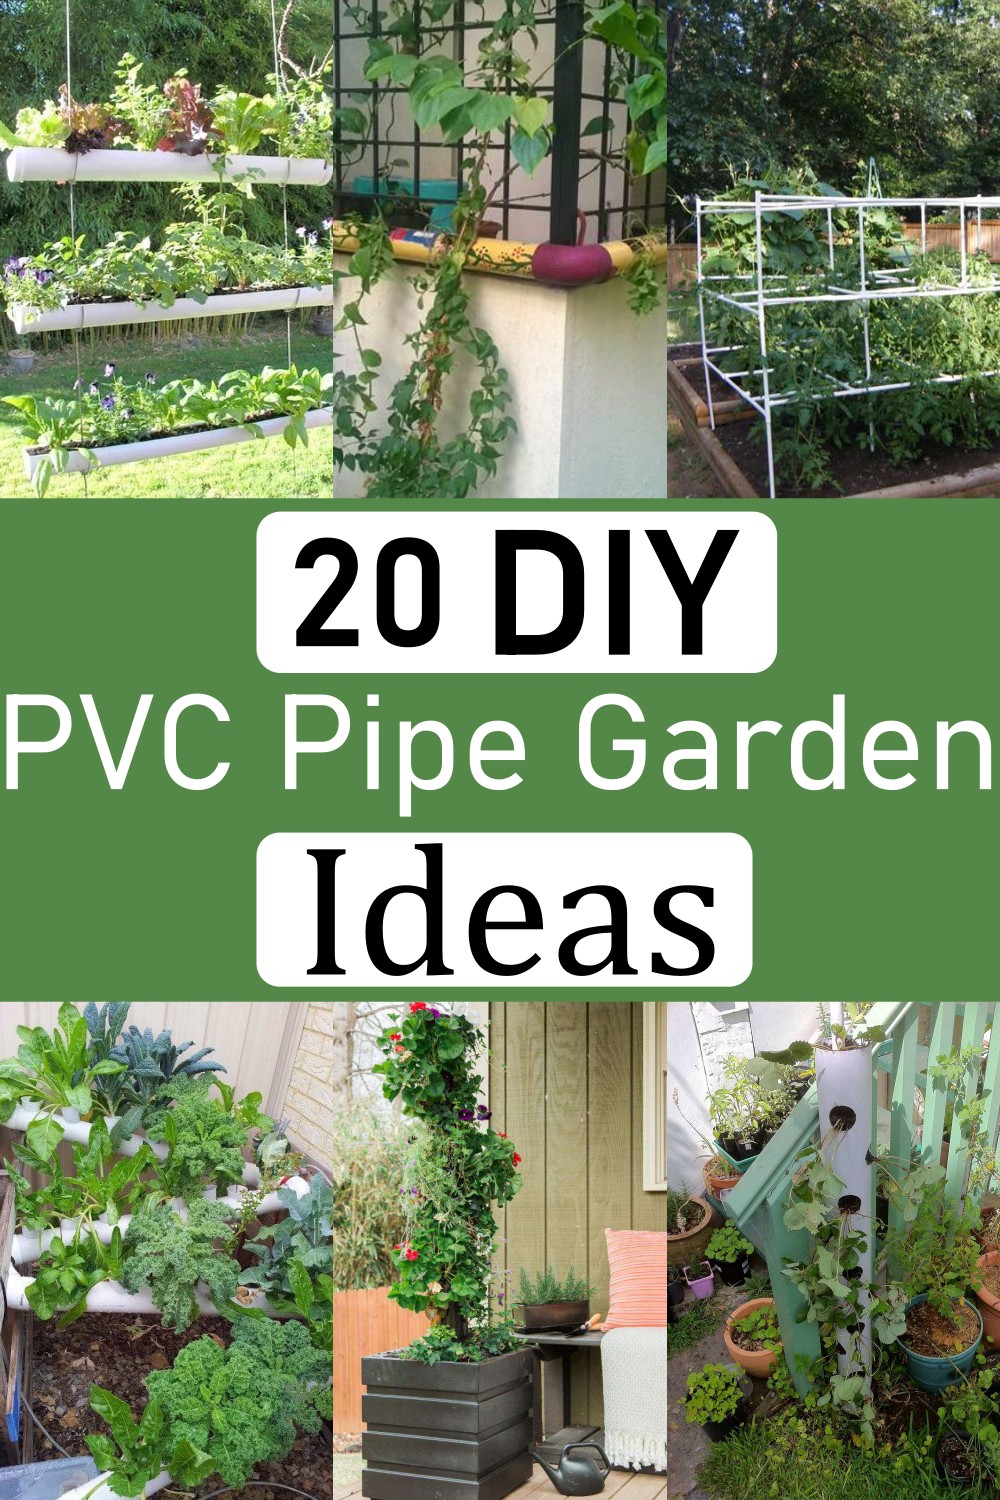  PVC Pipe Garden